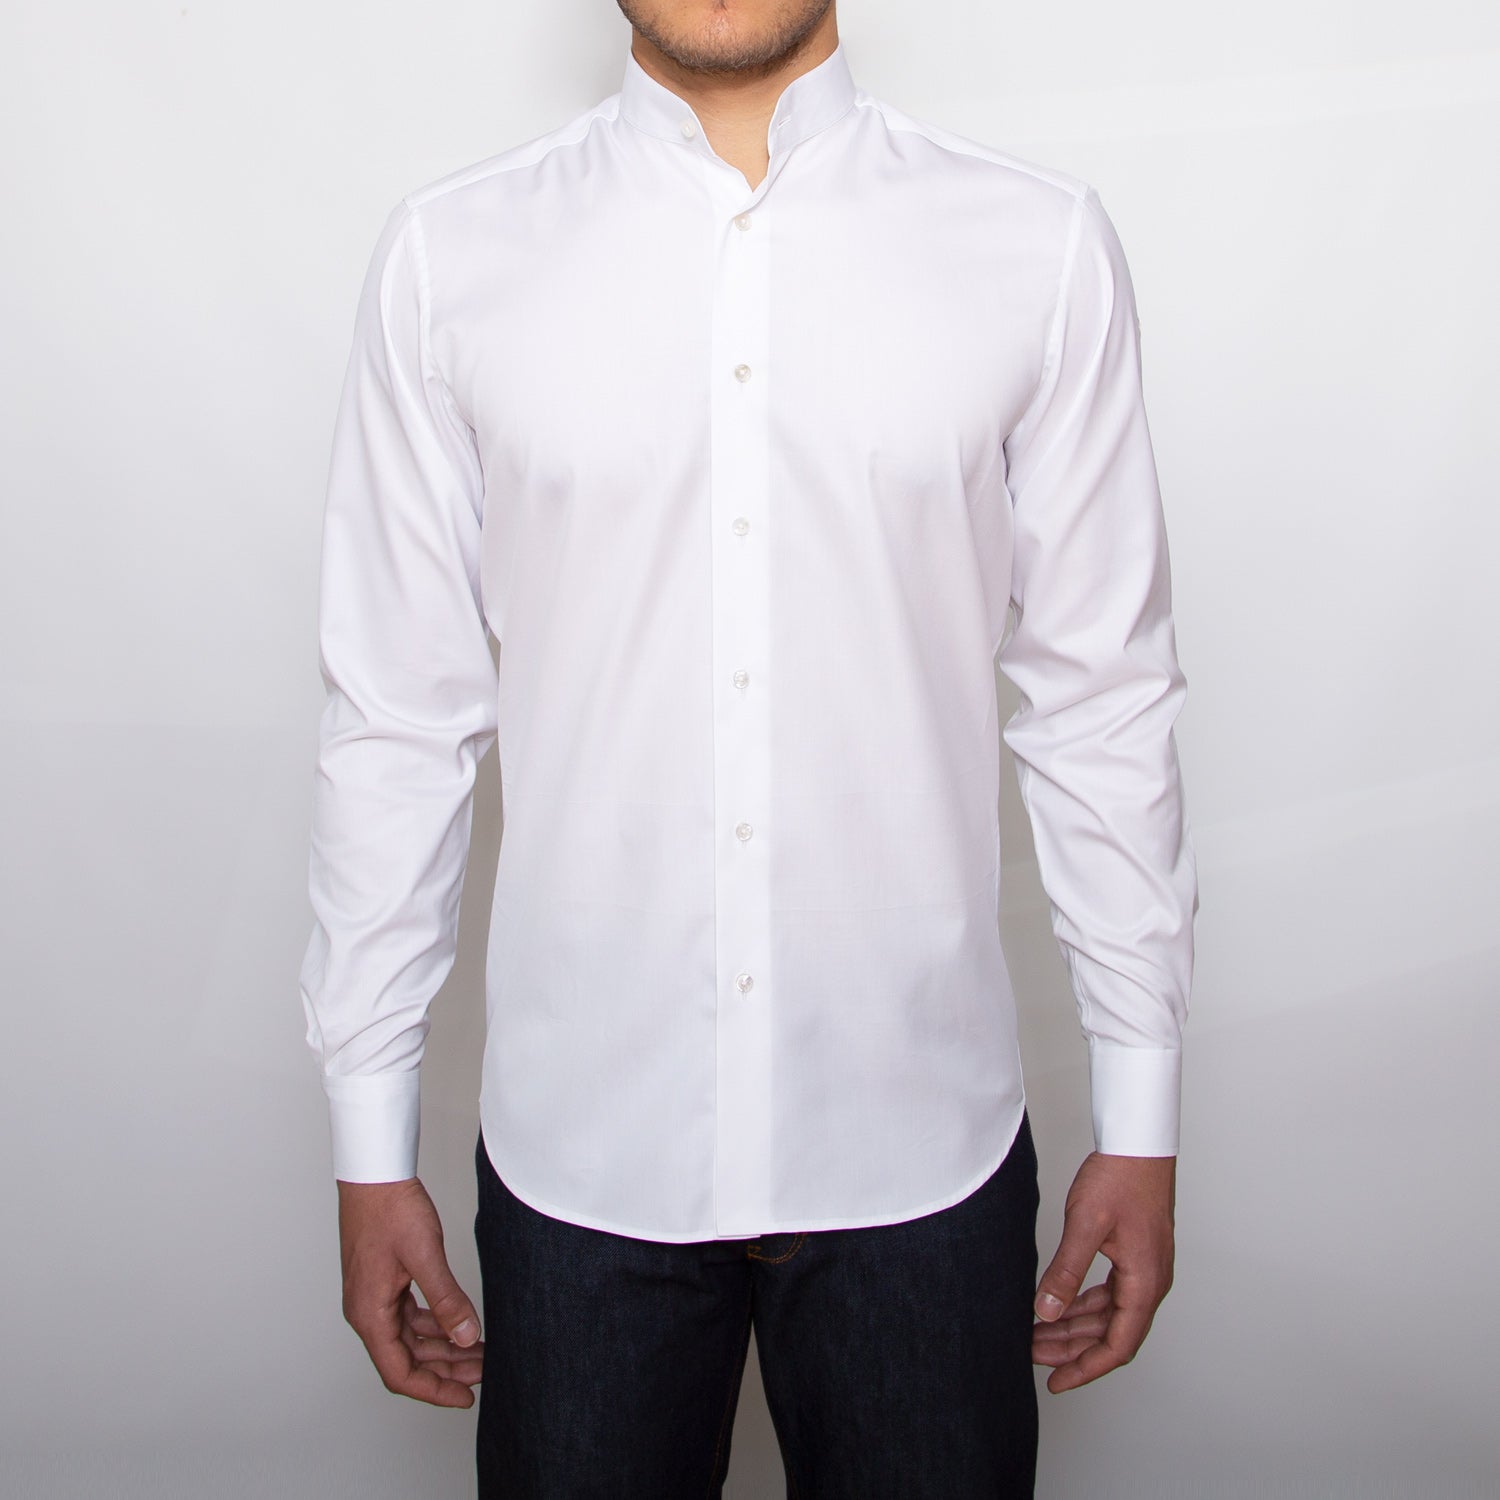 DARIO’S Couture Stand-up collar Men’s Shirt Hamburg in 140/2, White